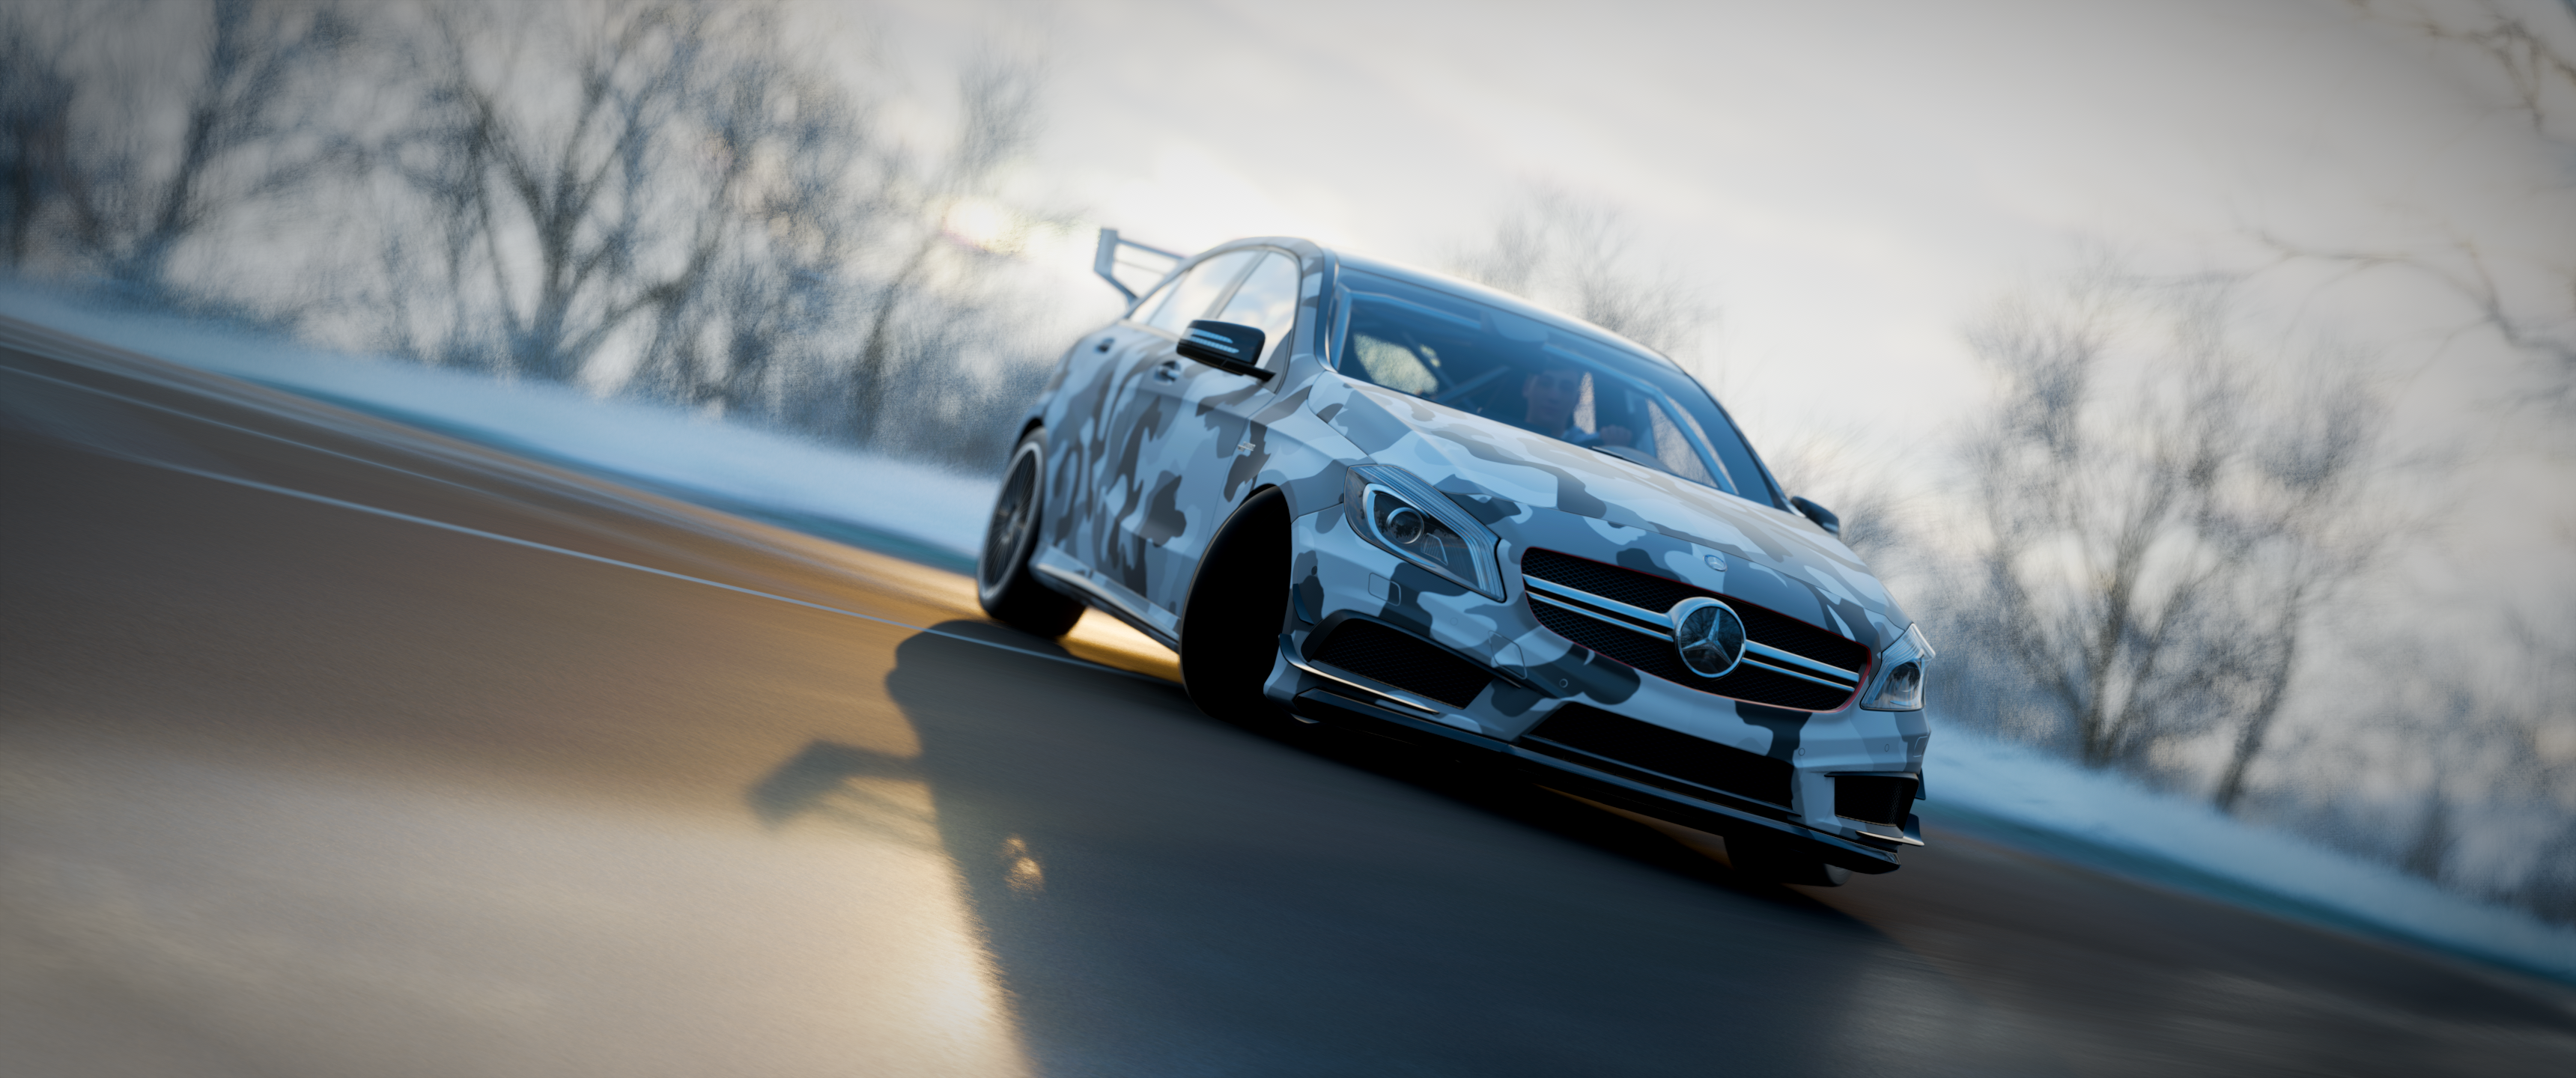 Forza Horizon 4, car, Mercedes C-25, PC gaming, Mercedes-Benz | 3440x1440 Wallpaper - wallhaven.cc